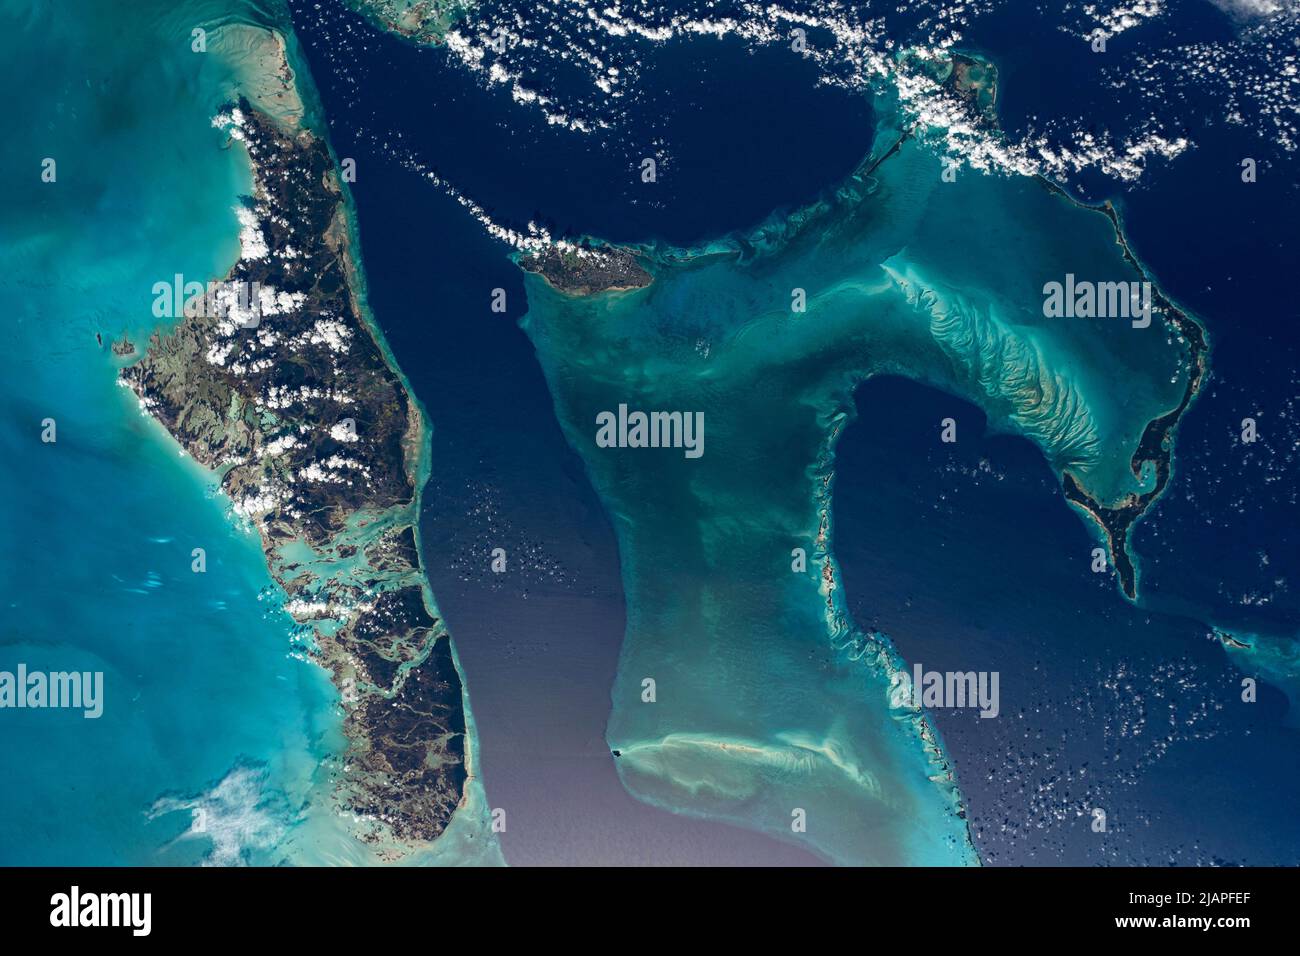 Les Bahamas (à gauche), Nassau (au milieu), Eleuthera (à droite). Une vue de la Terre depuis la Station spatiale internationale (ISS) 1 décembre 2021 une version optimisée et numériquement améliorée d'une image NASA/ESA. Crédit obligatoire : NASA/ESA/M.Maure. NB: Restrictions d'utilisation: Ne pas présenter comme endossement. Banque D'Images